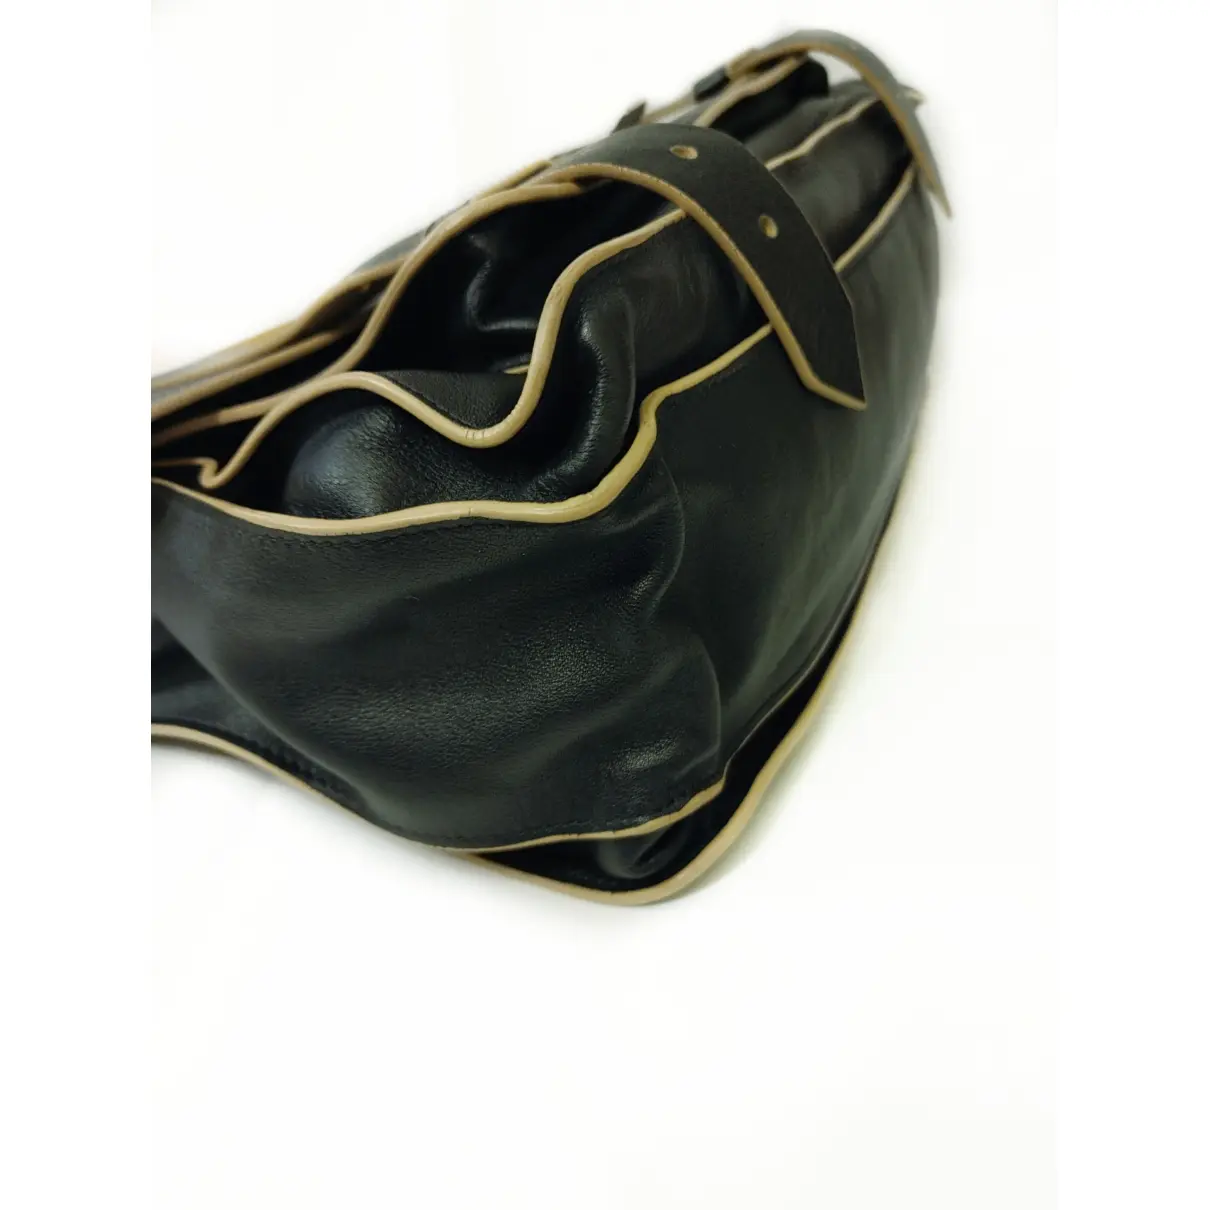 PS1 leather satchel Proenza Schouler